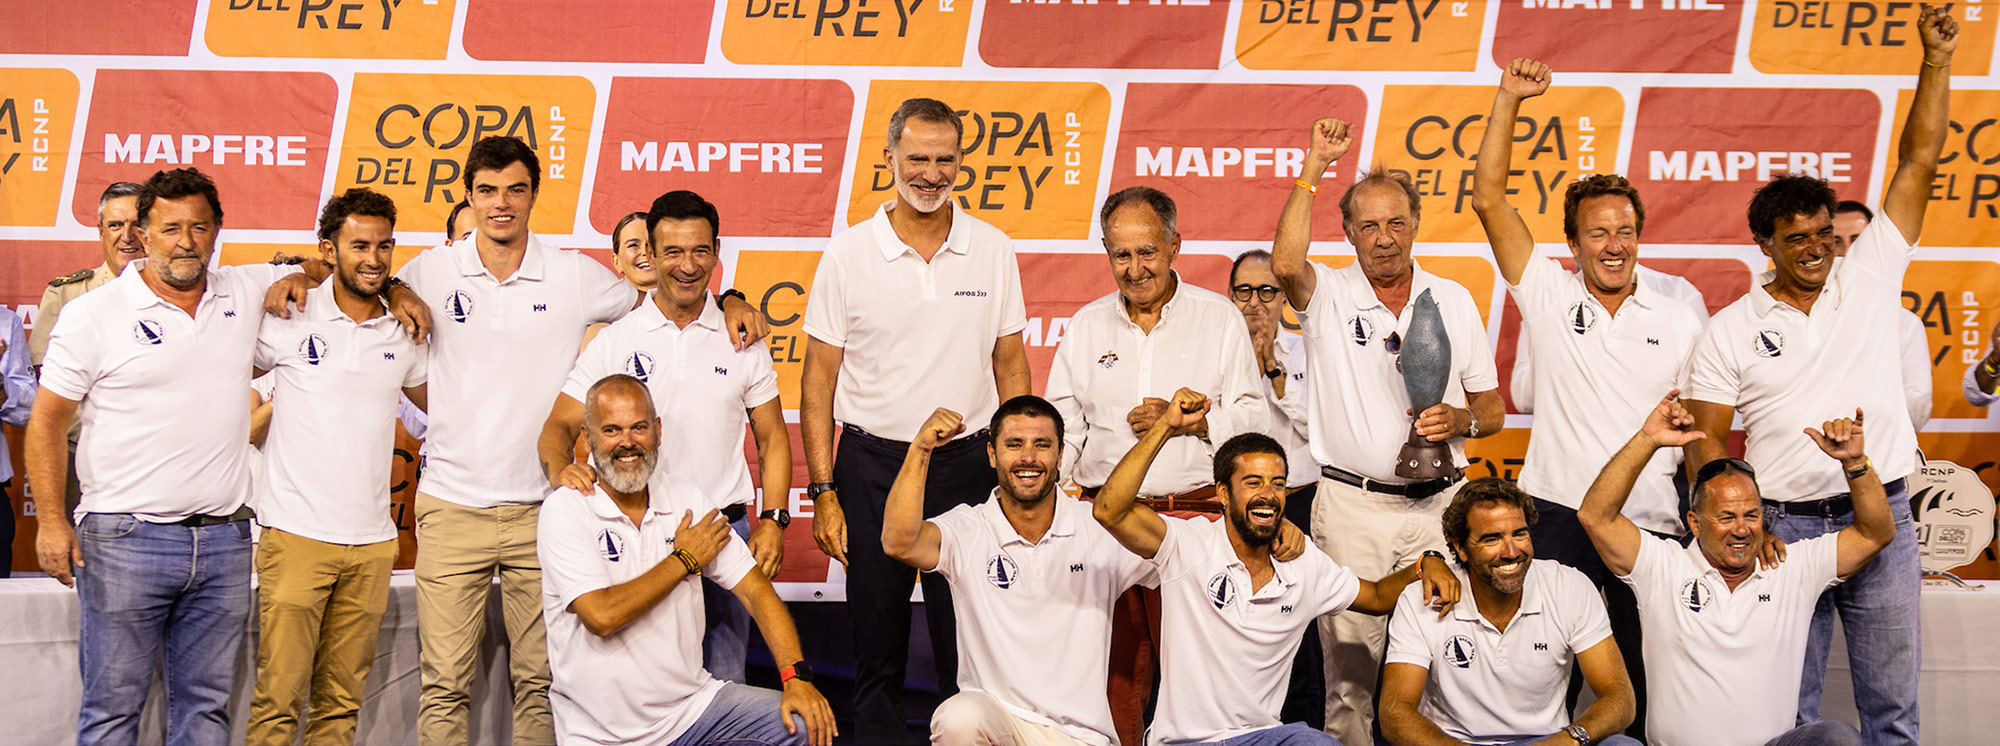 pbx sailing team - ganador copa del rey mapfre - palibex - 05